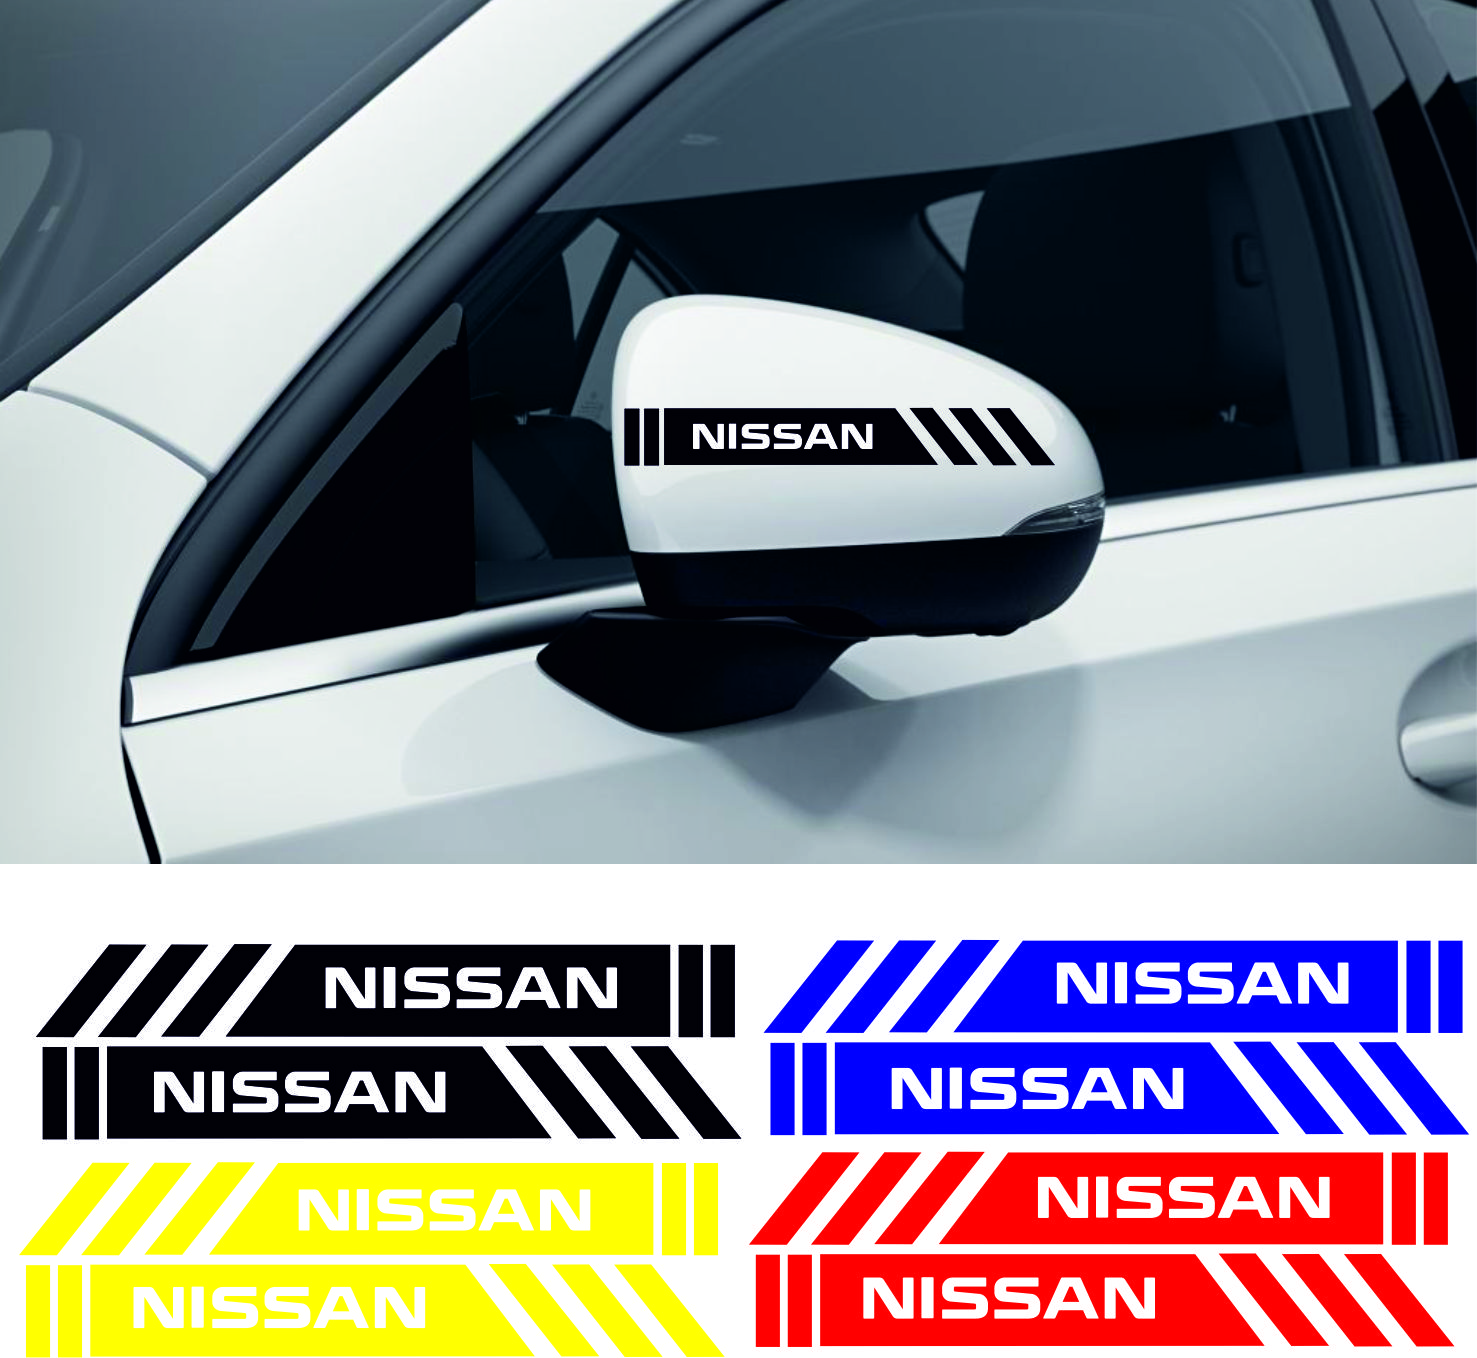 nissan sticker 2 - Nissan yan ayna şerit sticker